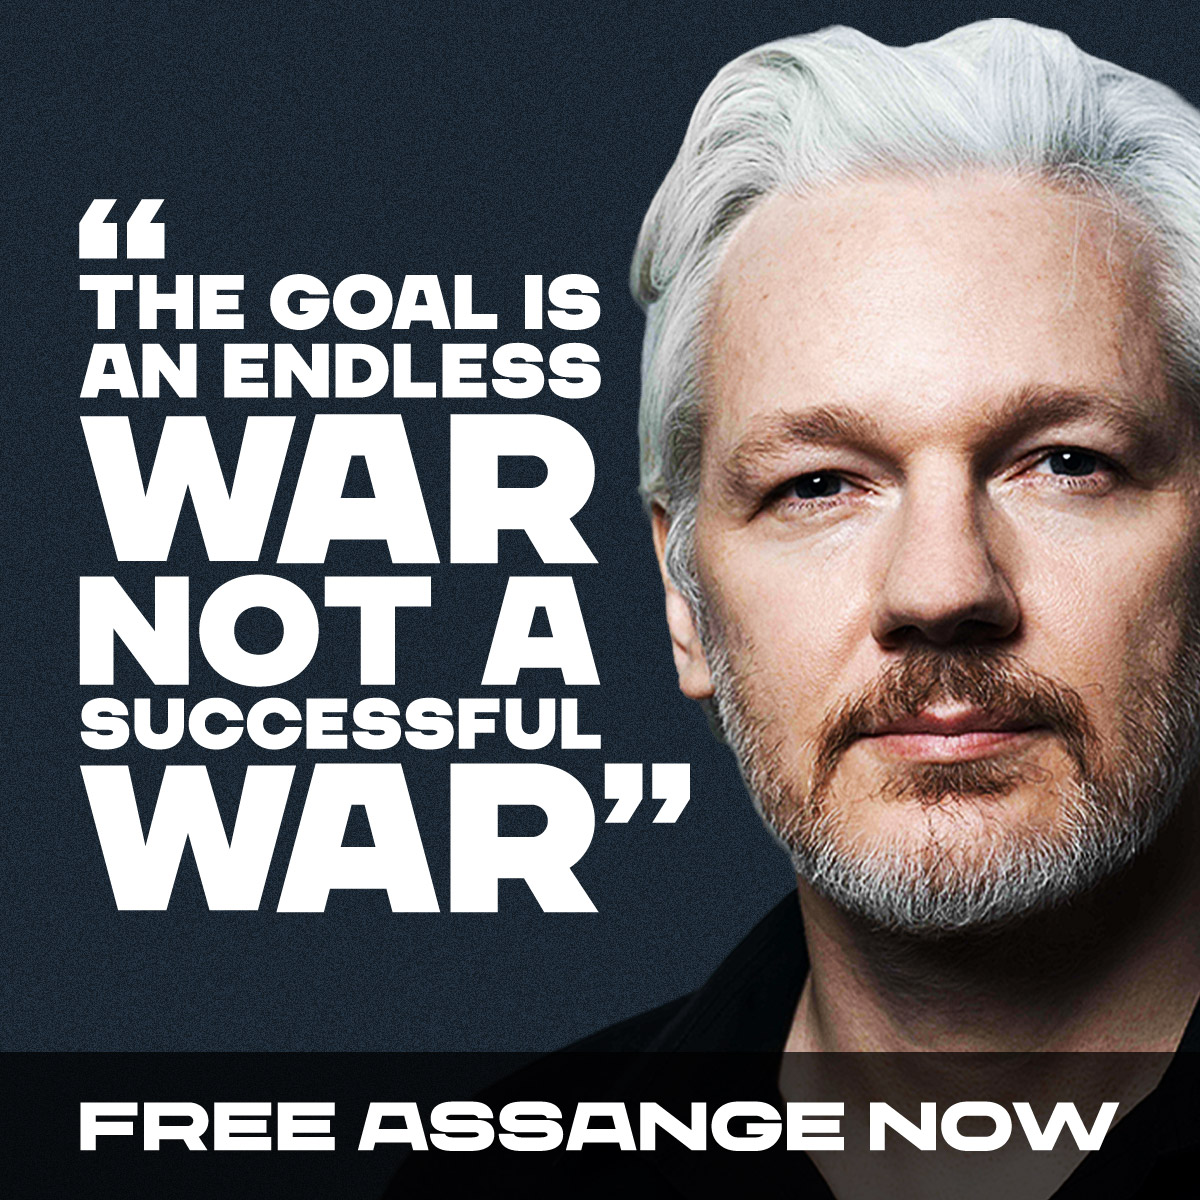 @Megatron_ron 'The goal is an endless war not a successful war.'

~Julian Assange, Australian journalist & political prisoner
#FreeJulianAssangeNOW